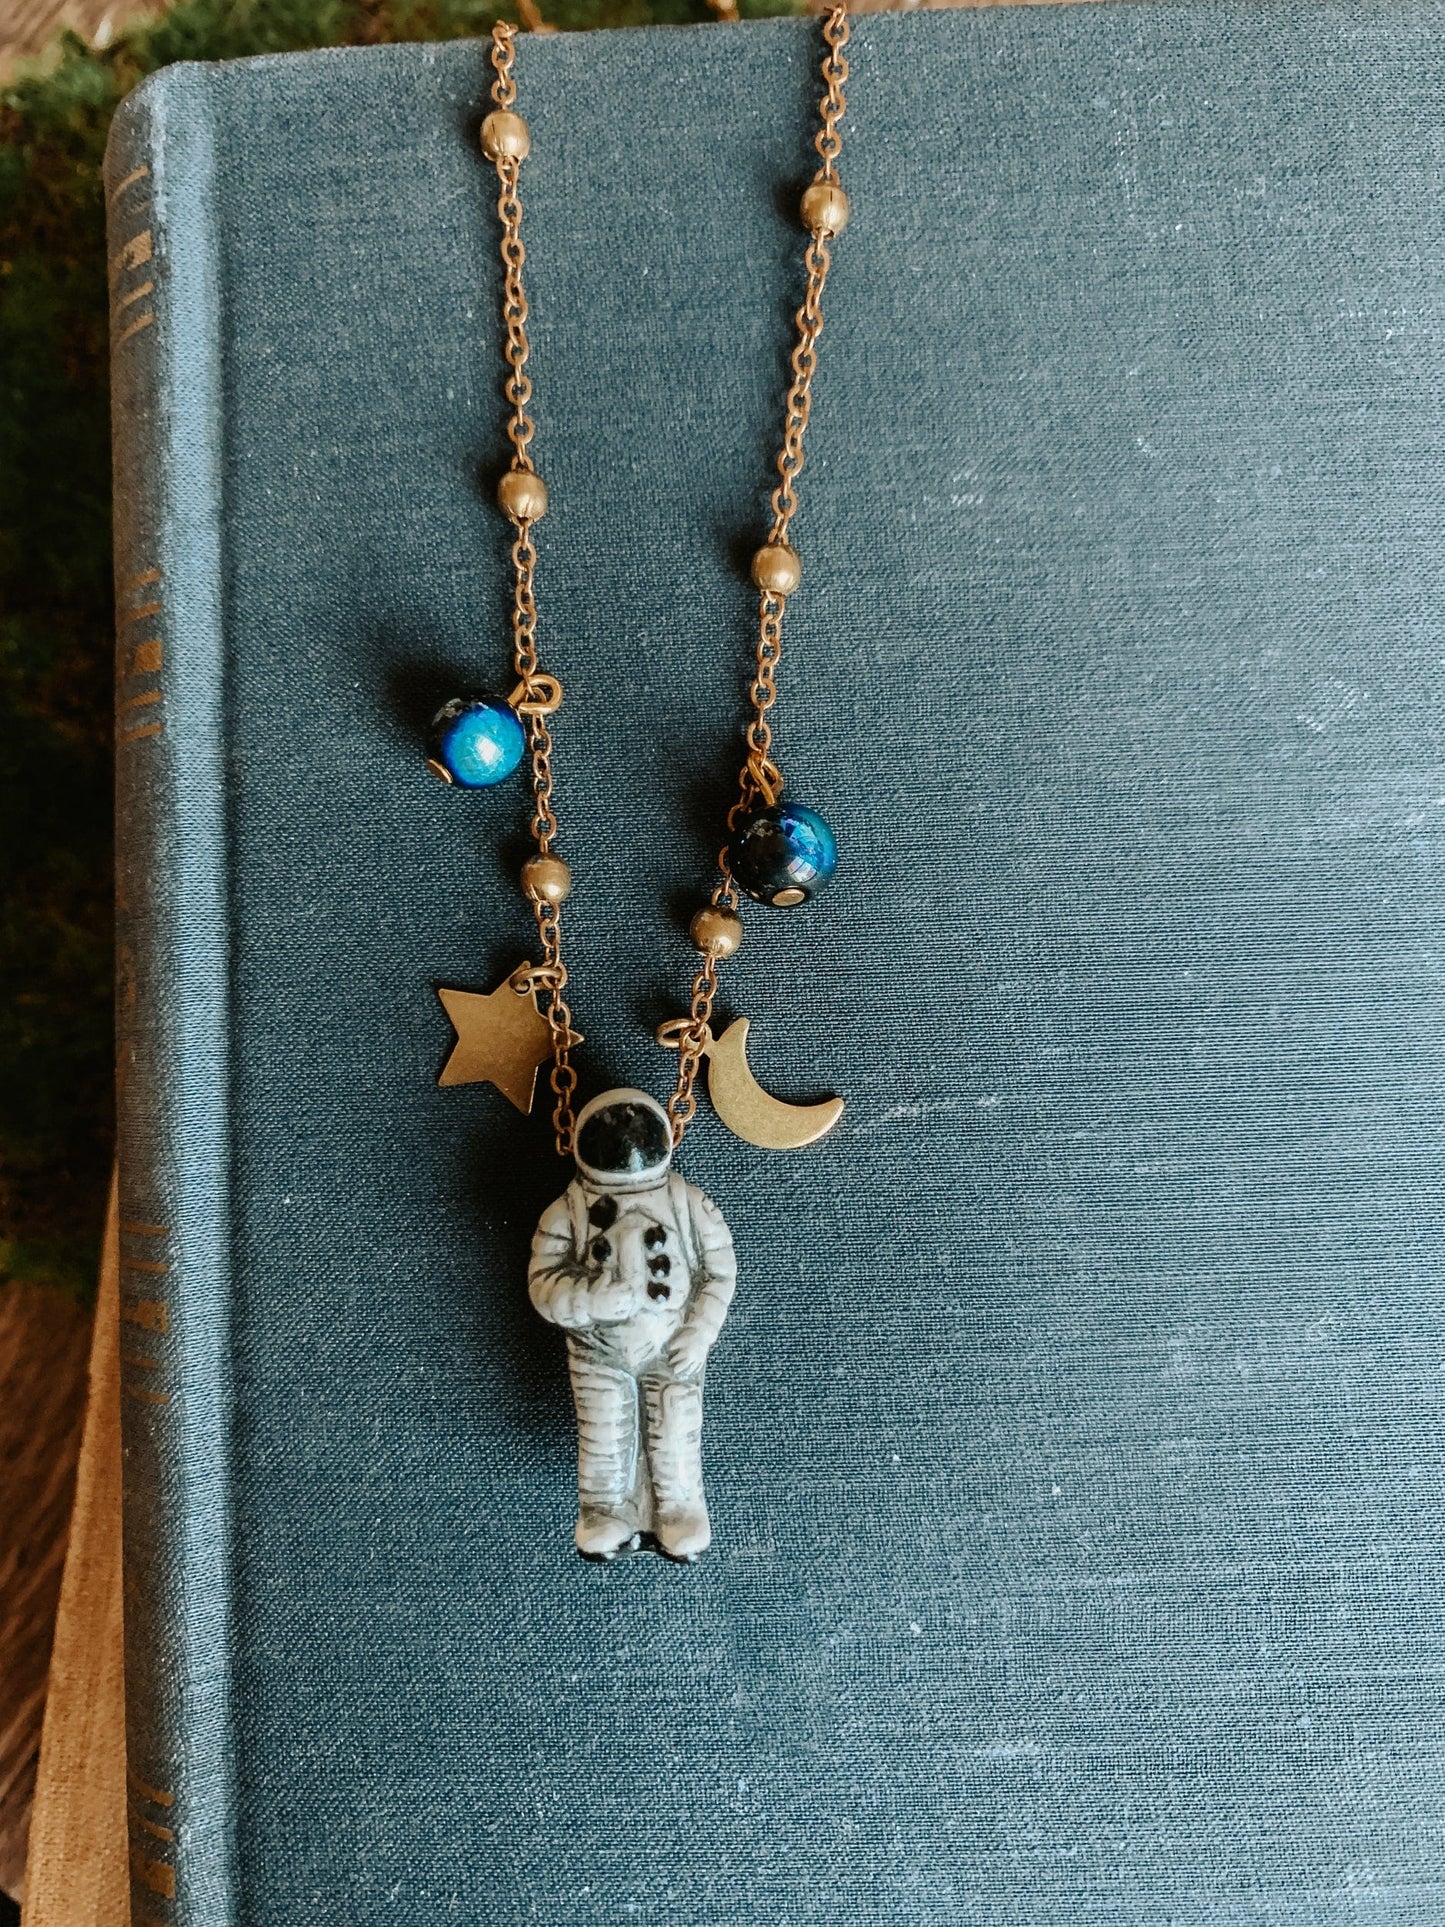 Space Explorer Necklace